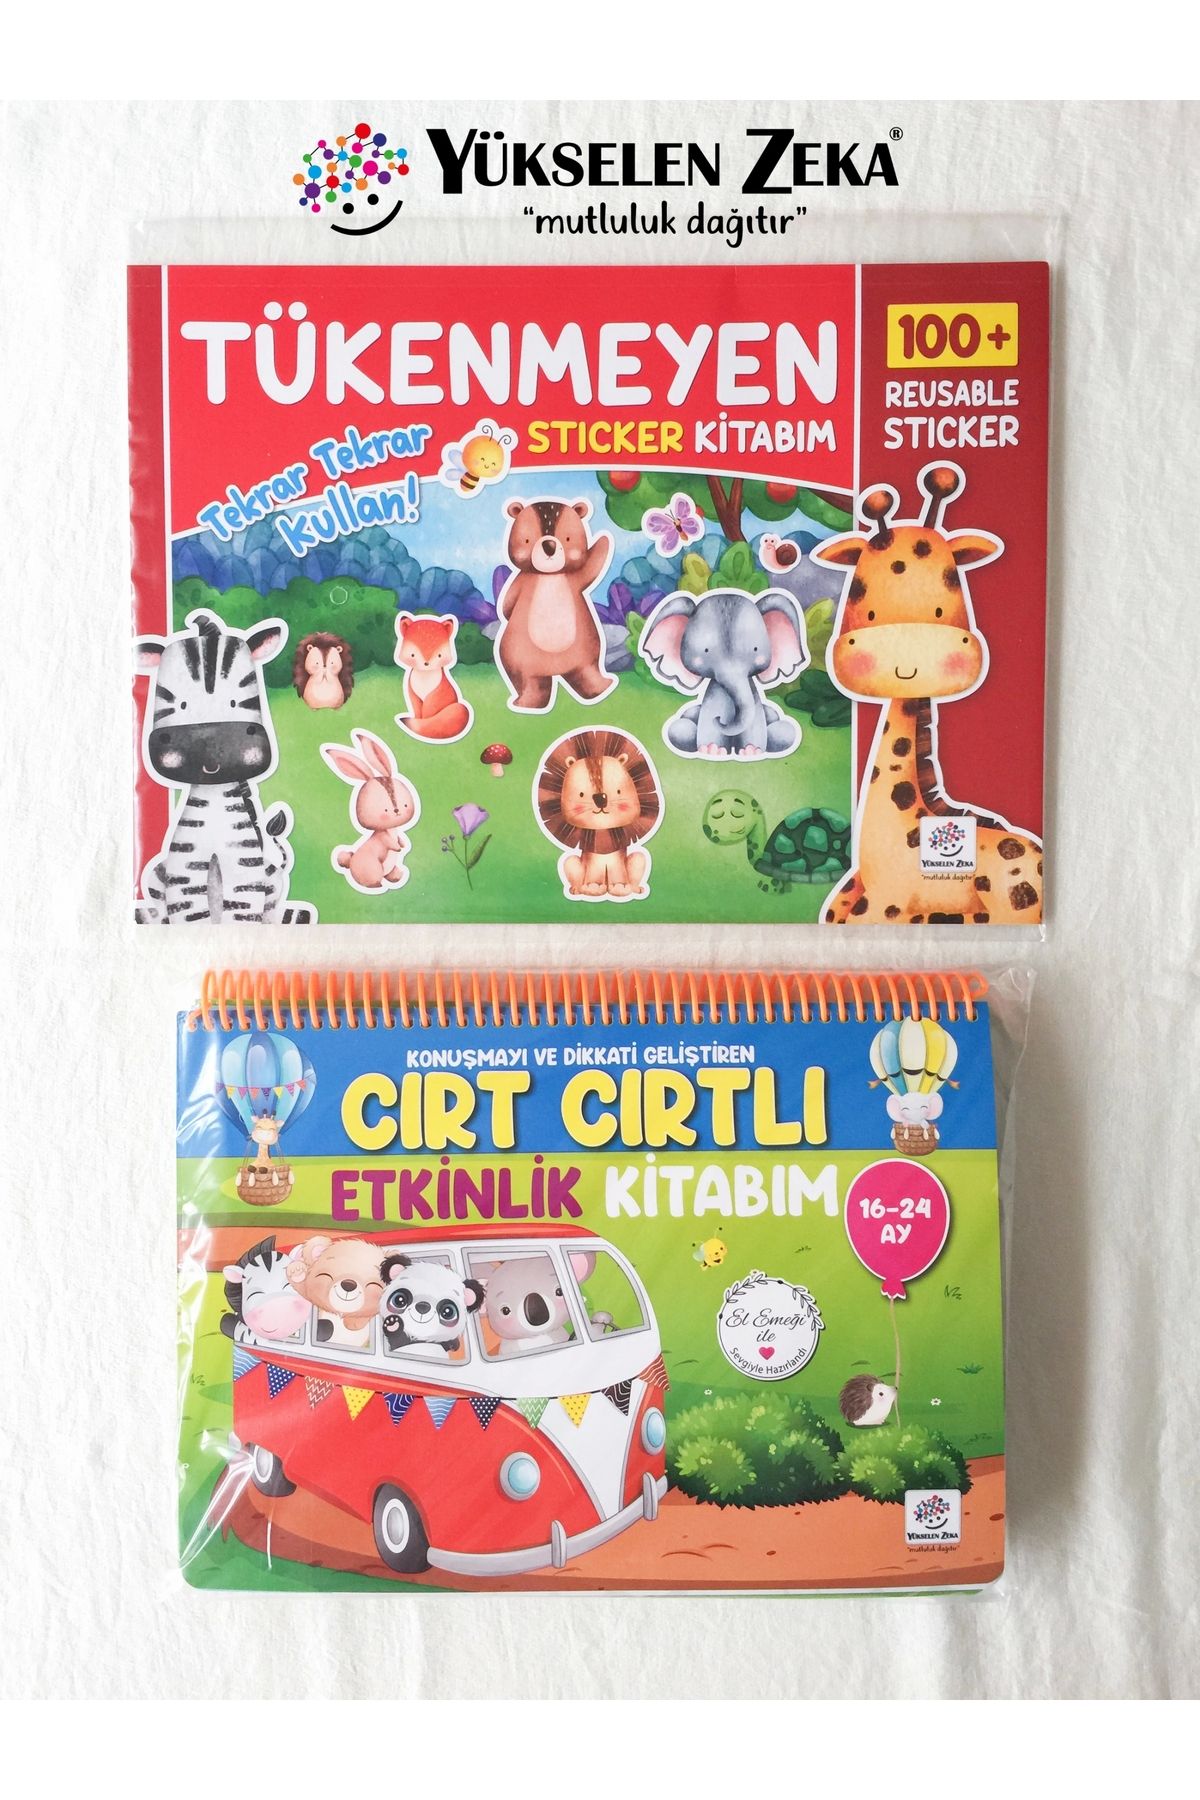 Yükselen Zeka Yayınları Tükenmeyen Sticker Kitabım - Cırt Cırtlı Kitap (16-24 Ay) Seti